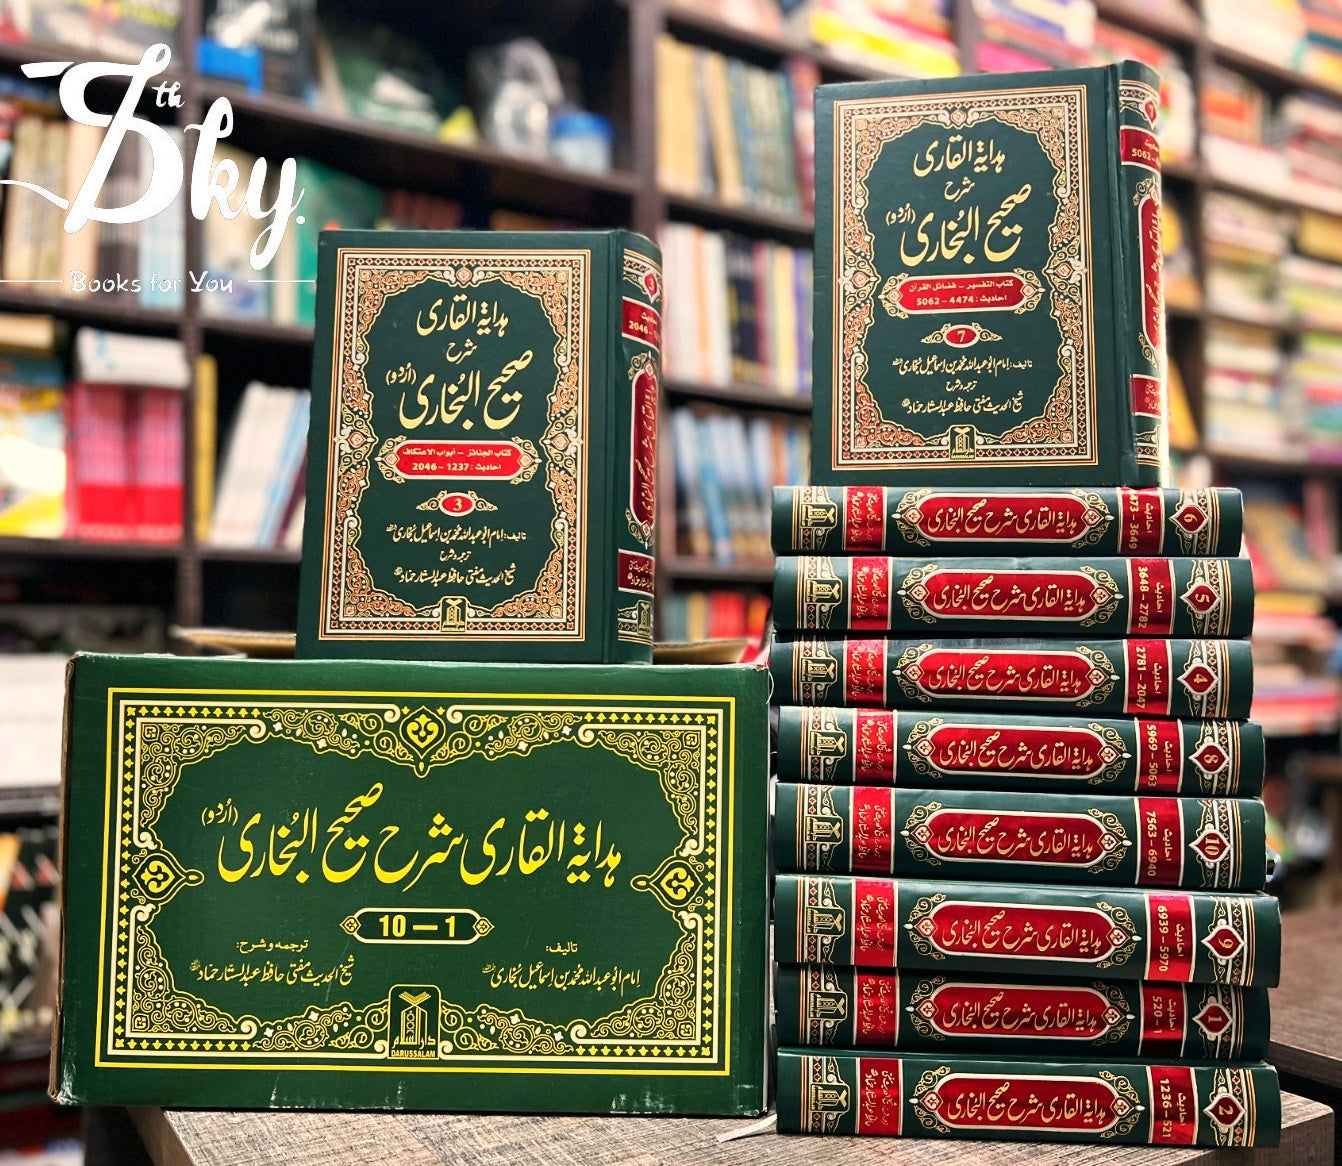 Sahi Bukhari Volume 10 (ہدایتہ القاری شرح صحيح البخاری – 10 جلد)